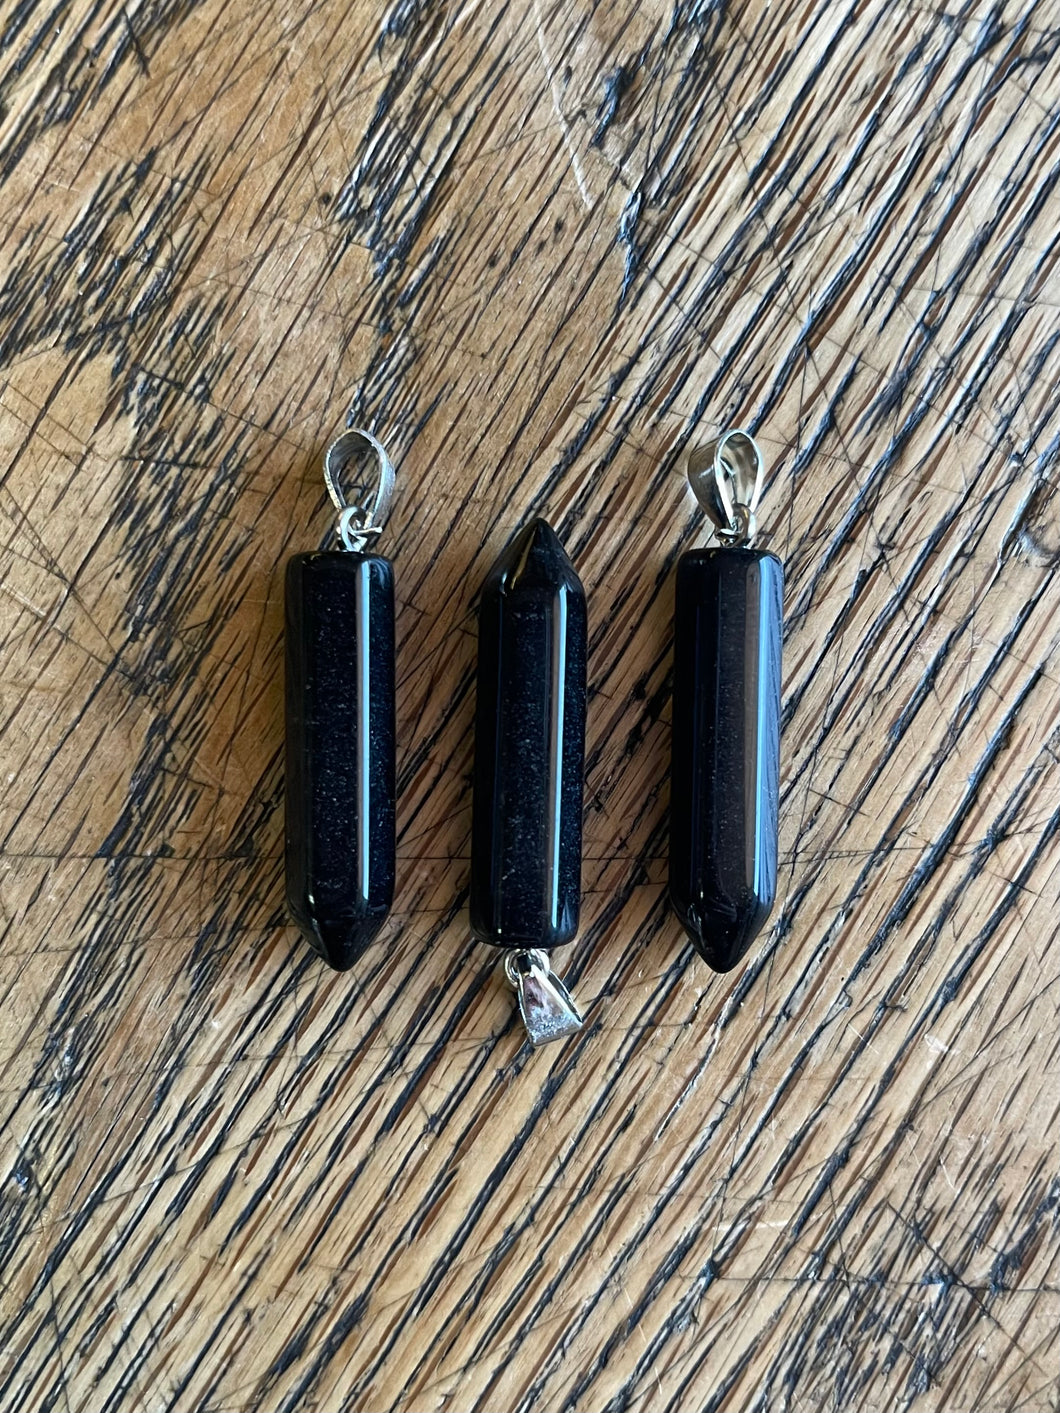 Obsidian point pendants